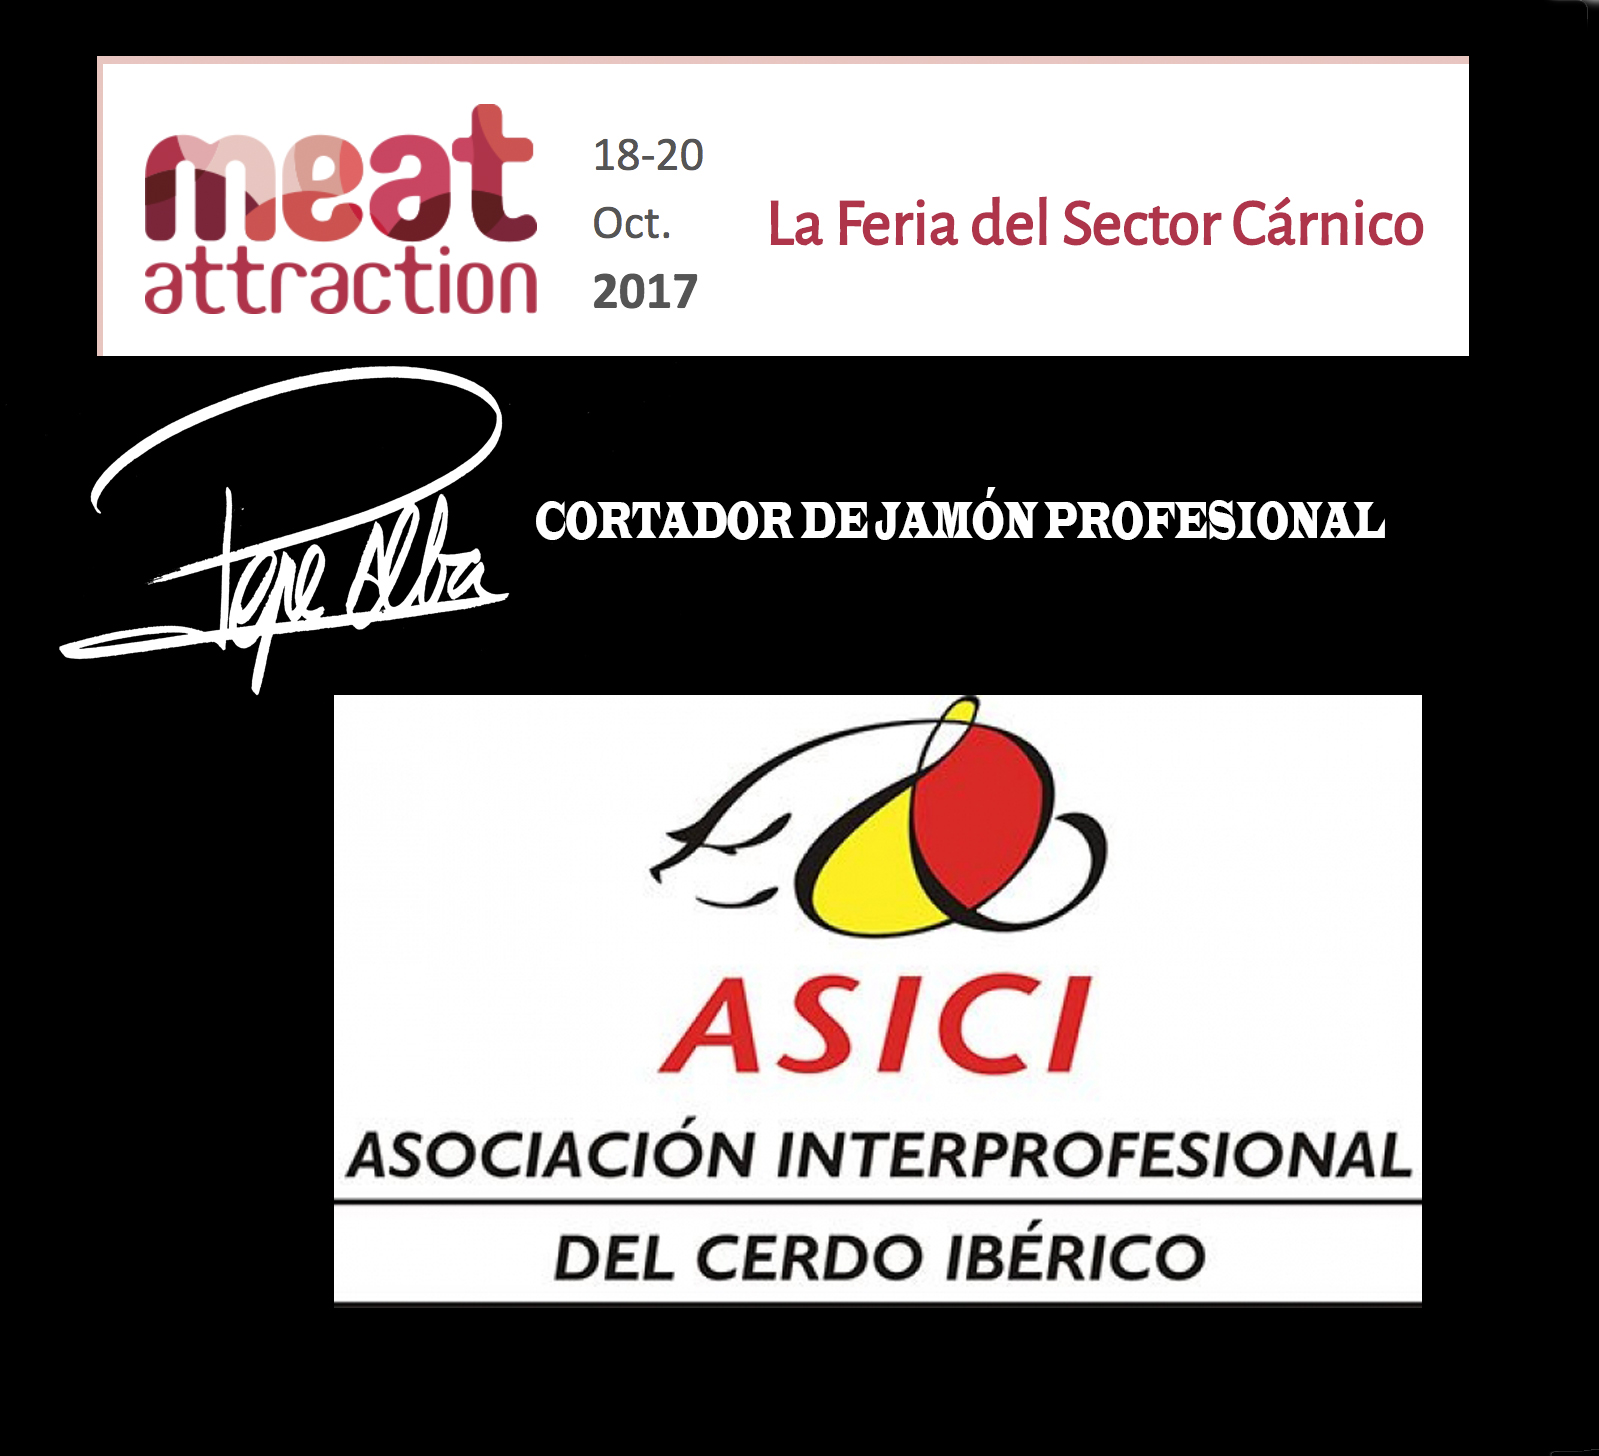 Meat attraction feria del sector carnico asici asociacion interprofesional del cerdo iberico 25